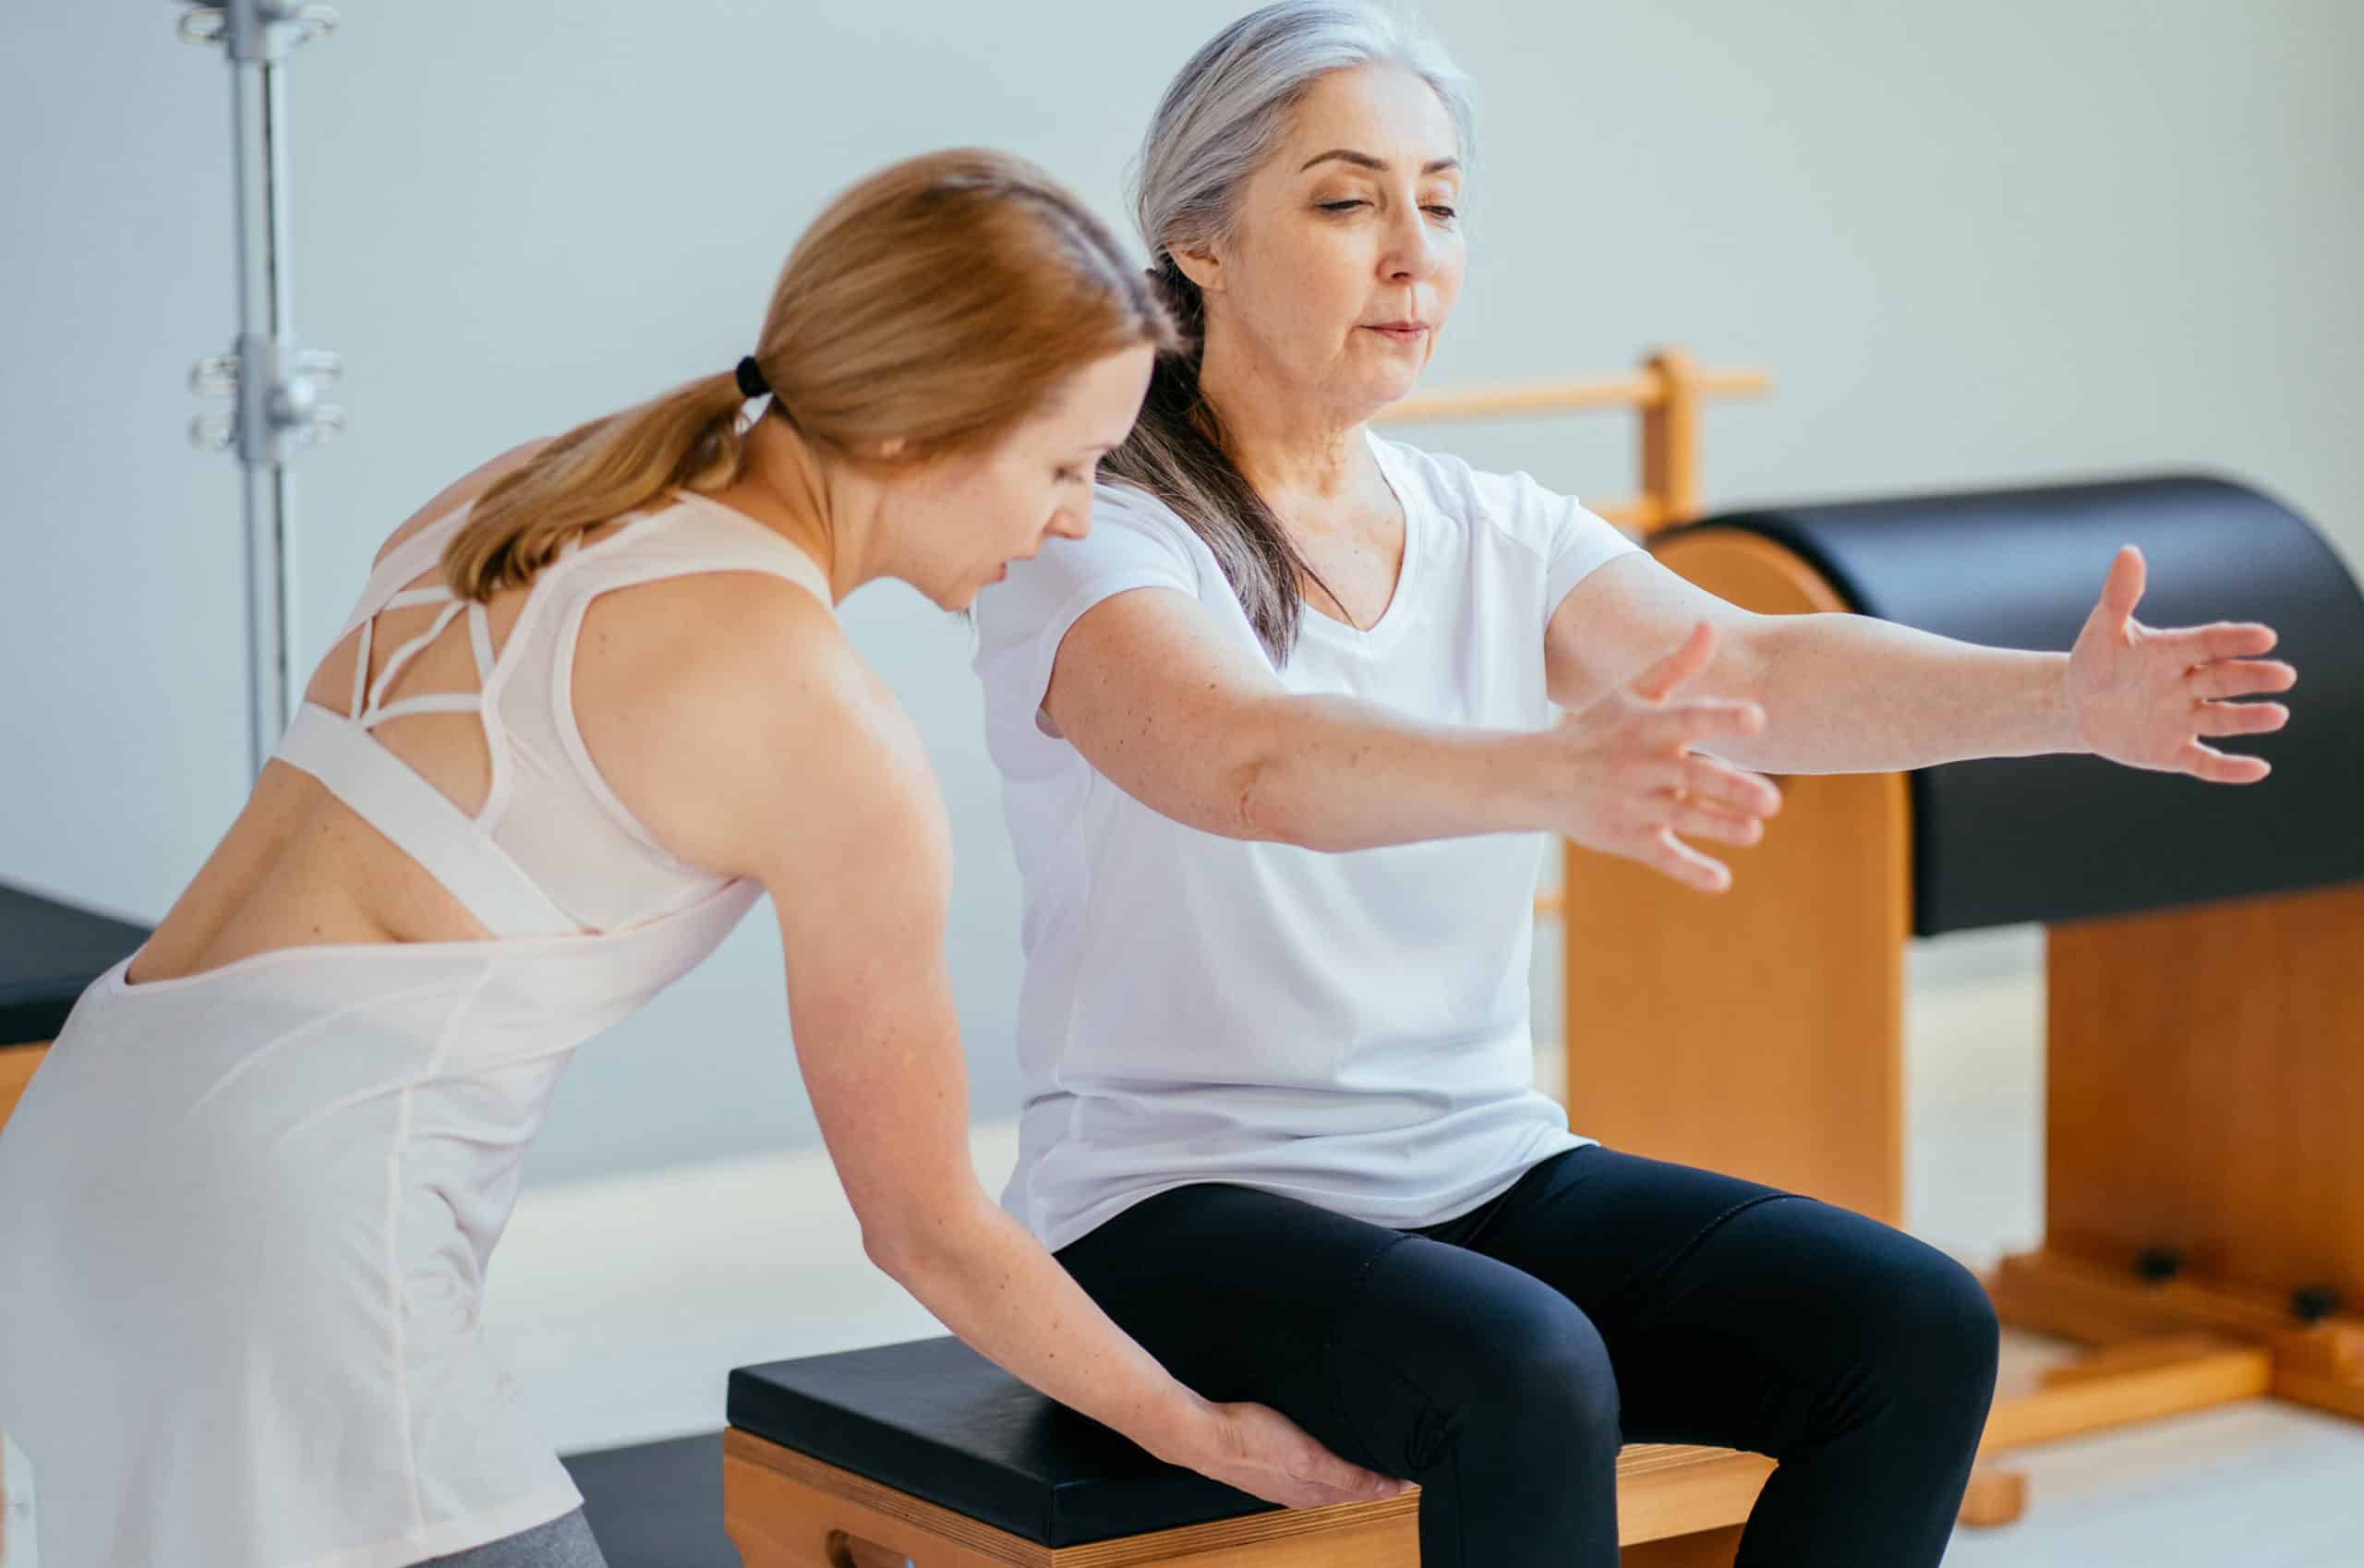 5 Great Beginner Yoga Poses For Seniors - BlackDoctor.org